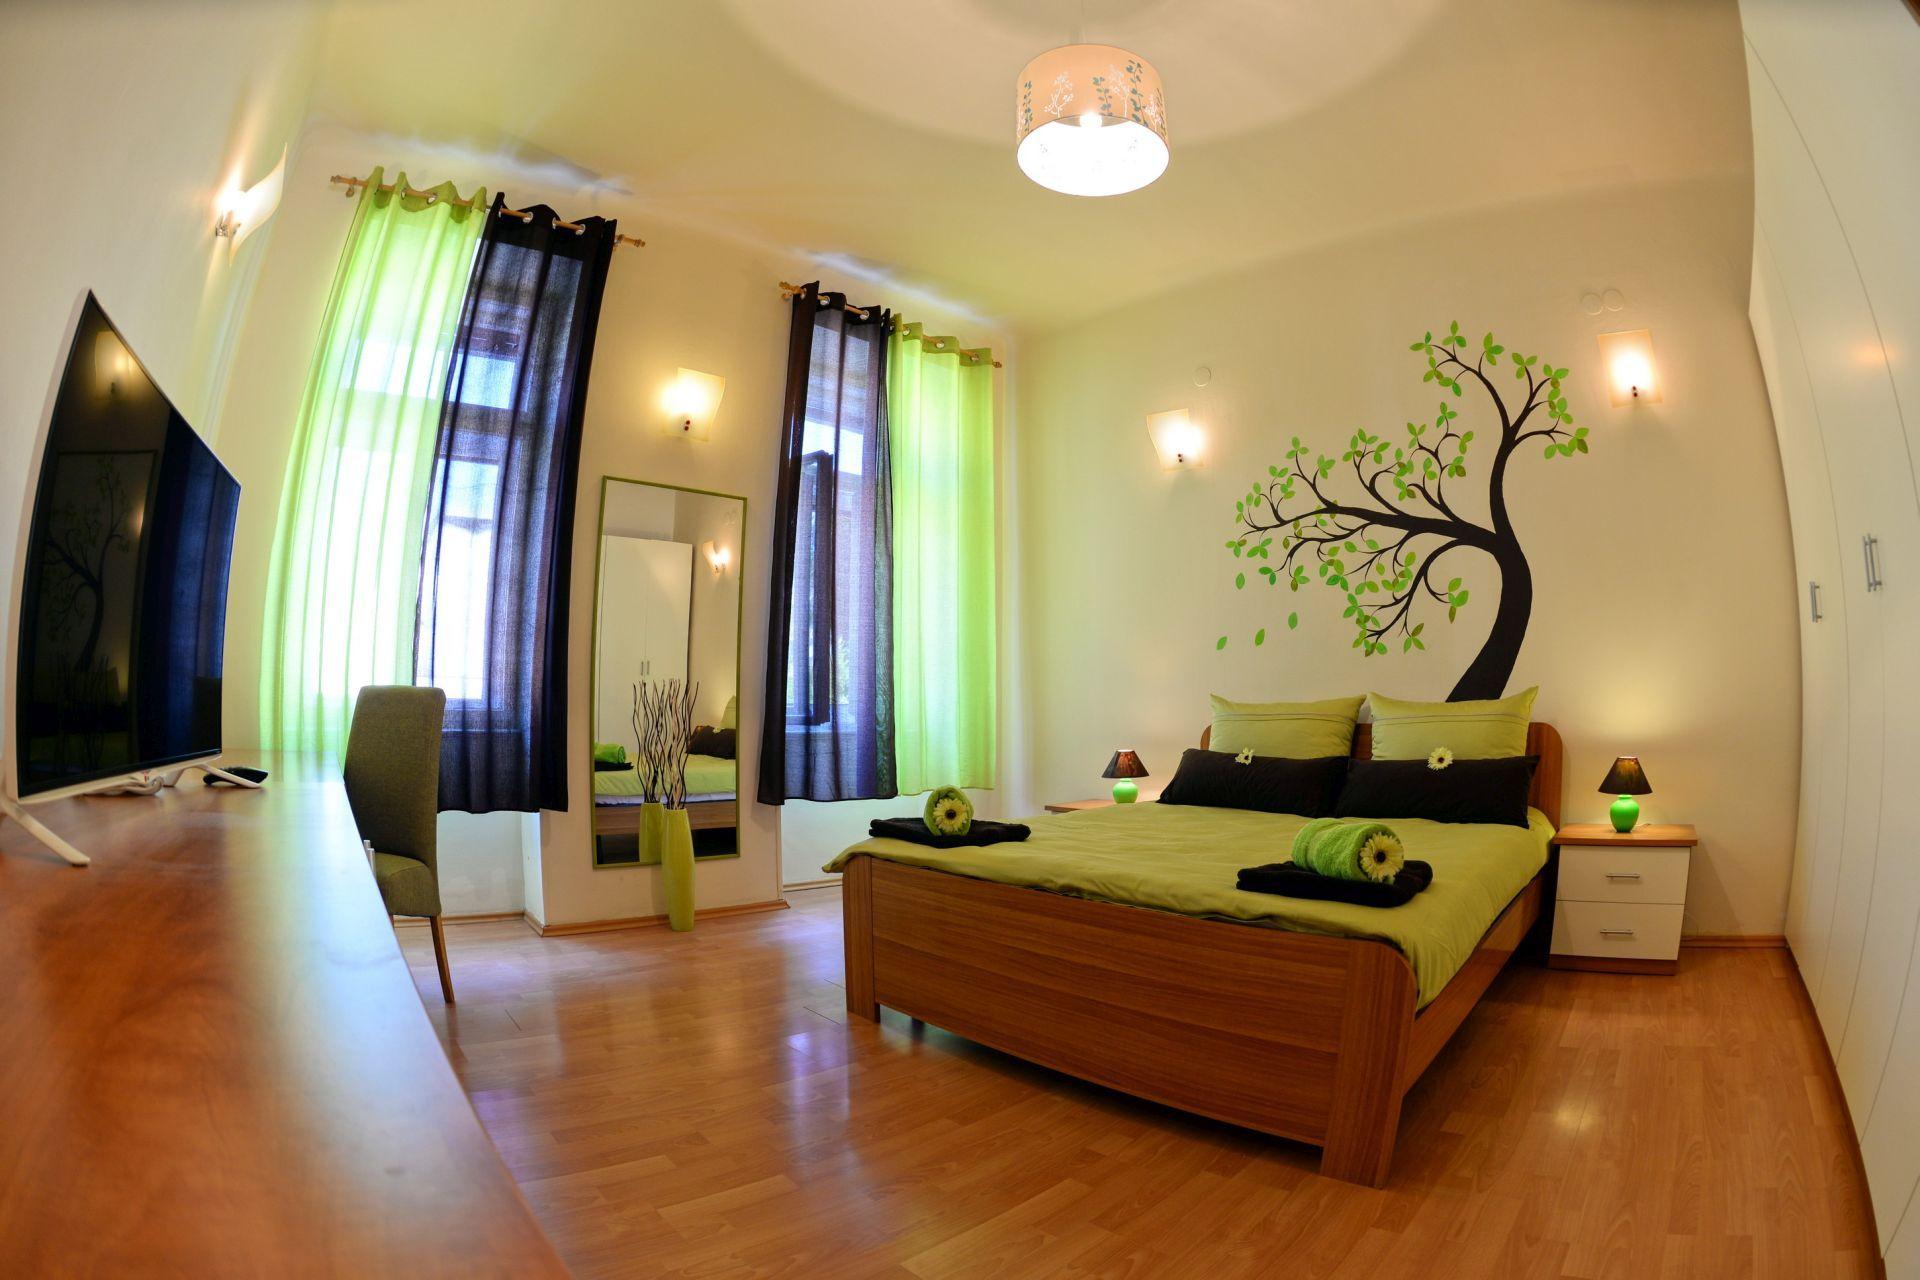 Ferienwohnung für 3 Personen  + 1 Kind ca. 70 Ferienwohnung in Istrien